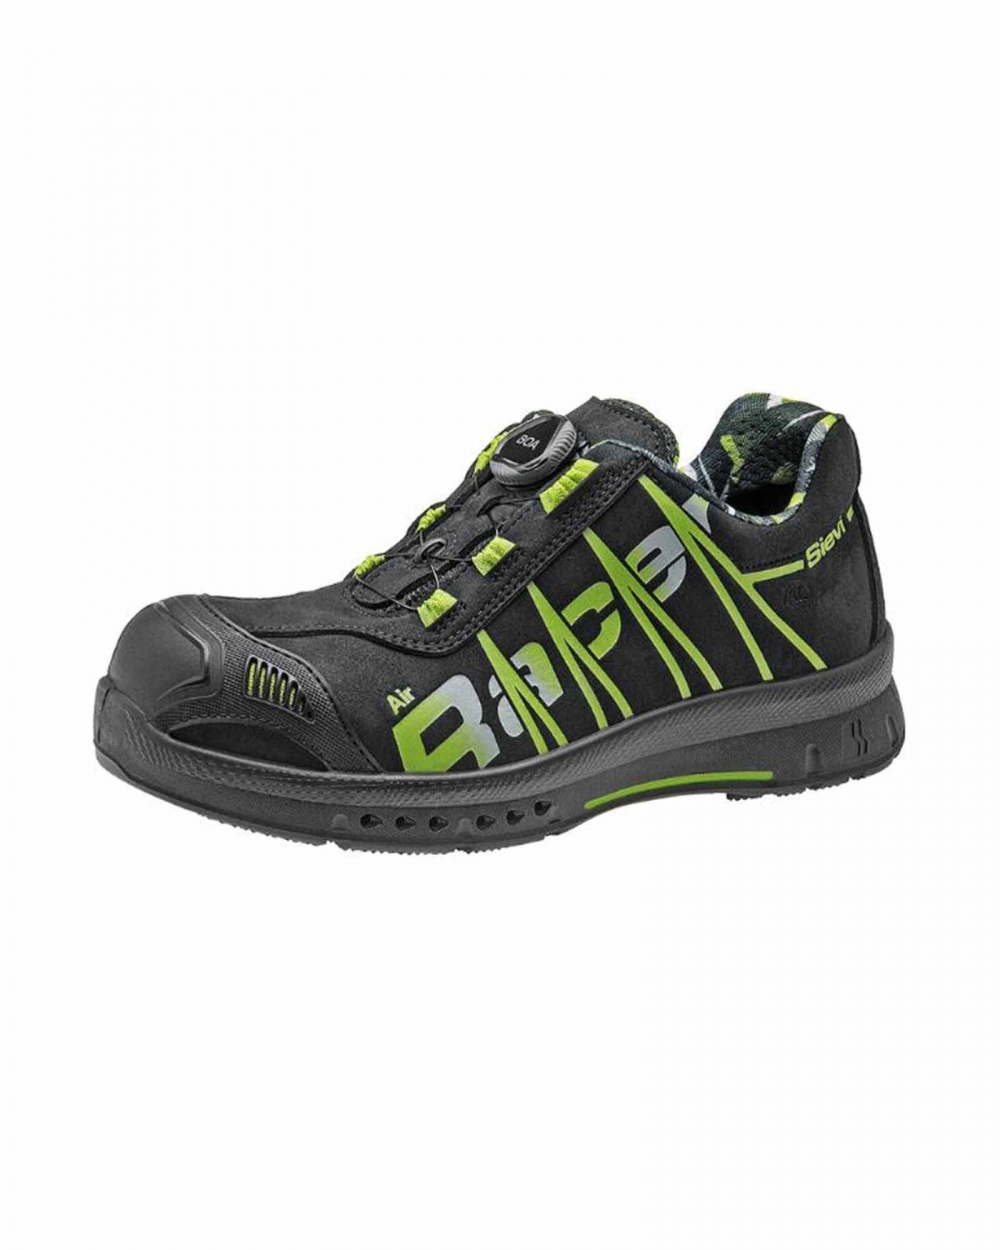 Lav sko i sikkerhetsklasse S3 med SieviAir®-såle og Boa®-mekanisme, spikertramp i stål og tåhette i aluminium.